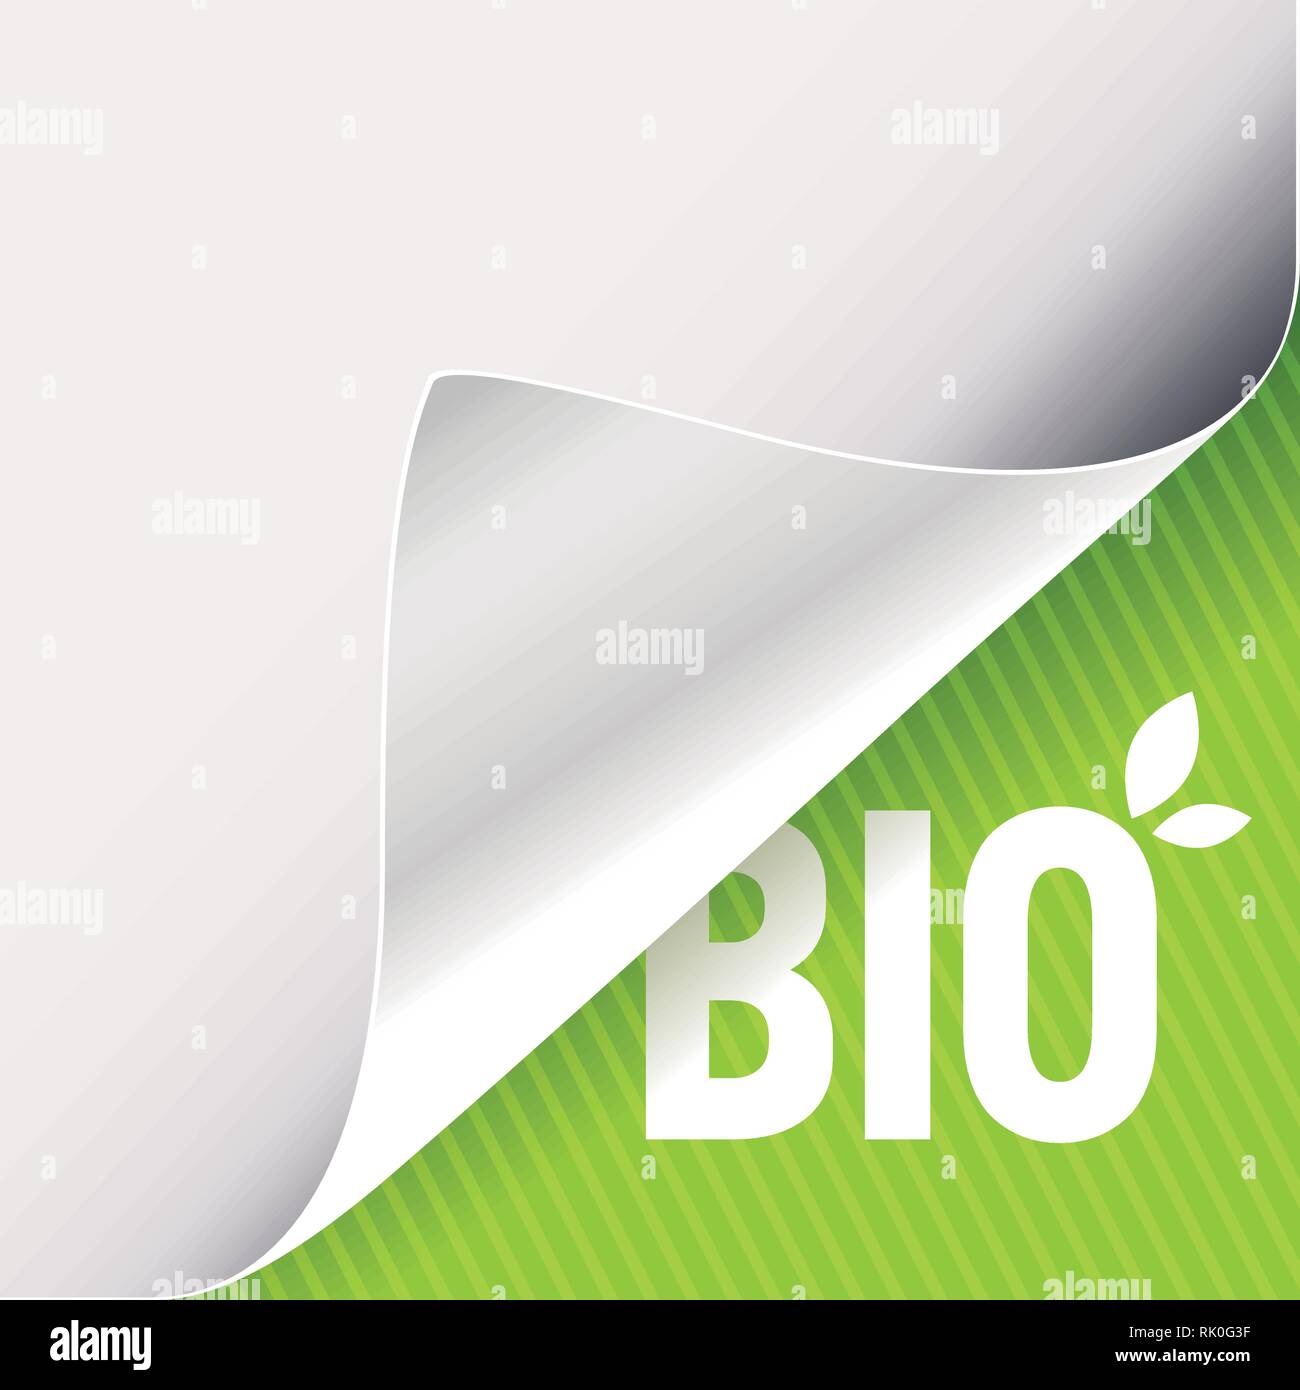 Gewellte Ecke des weißen Papiers auf einer grünen unteren rechten Winkel Hintergrund. Bio slogan Zeichen mit Blättern. Vector Illustration. Stock Vektor